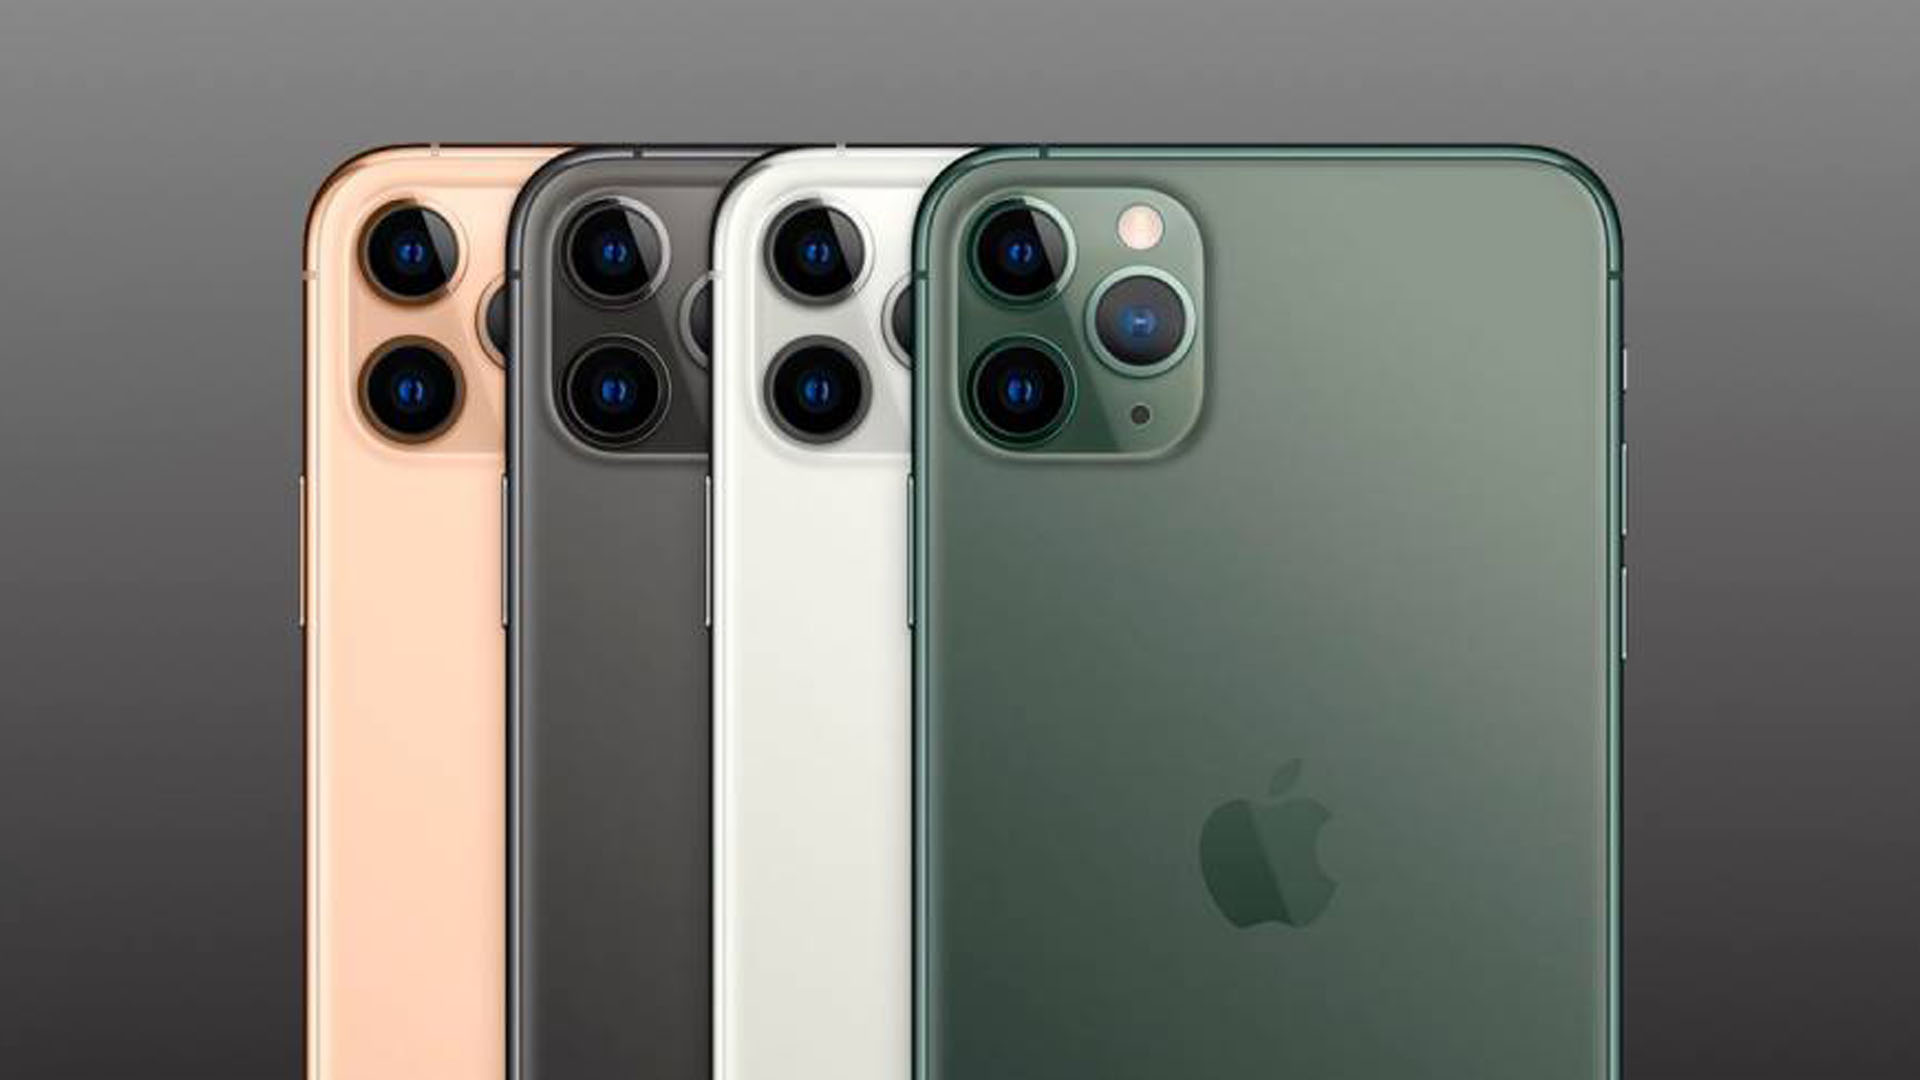 iPhone 12: cÃ³mo serÃ¡n los nuevos smartphones de Apple - IMPULSO